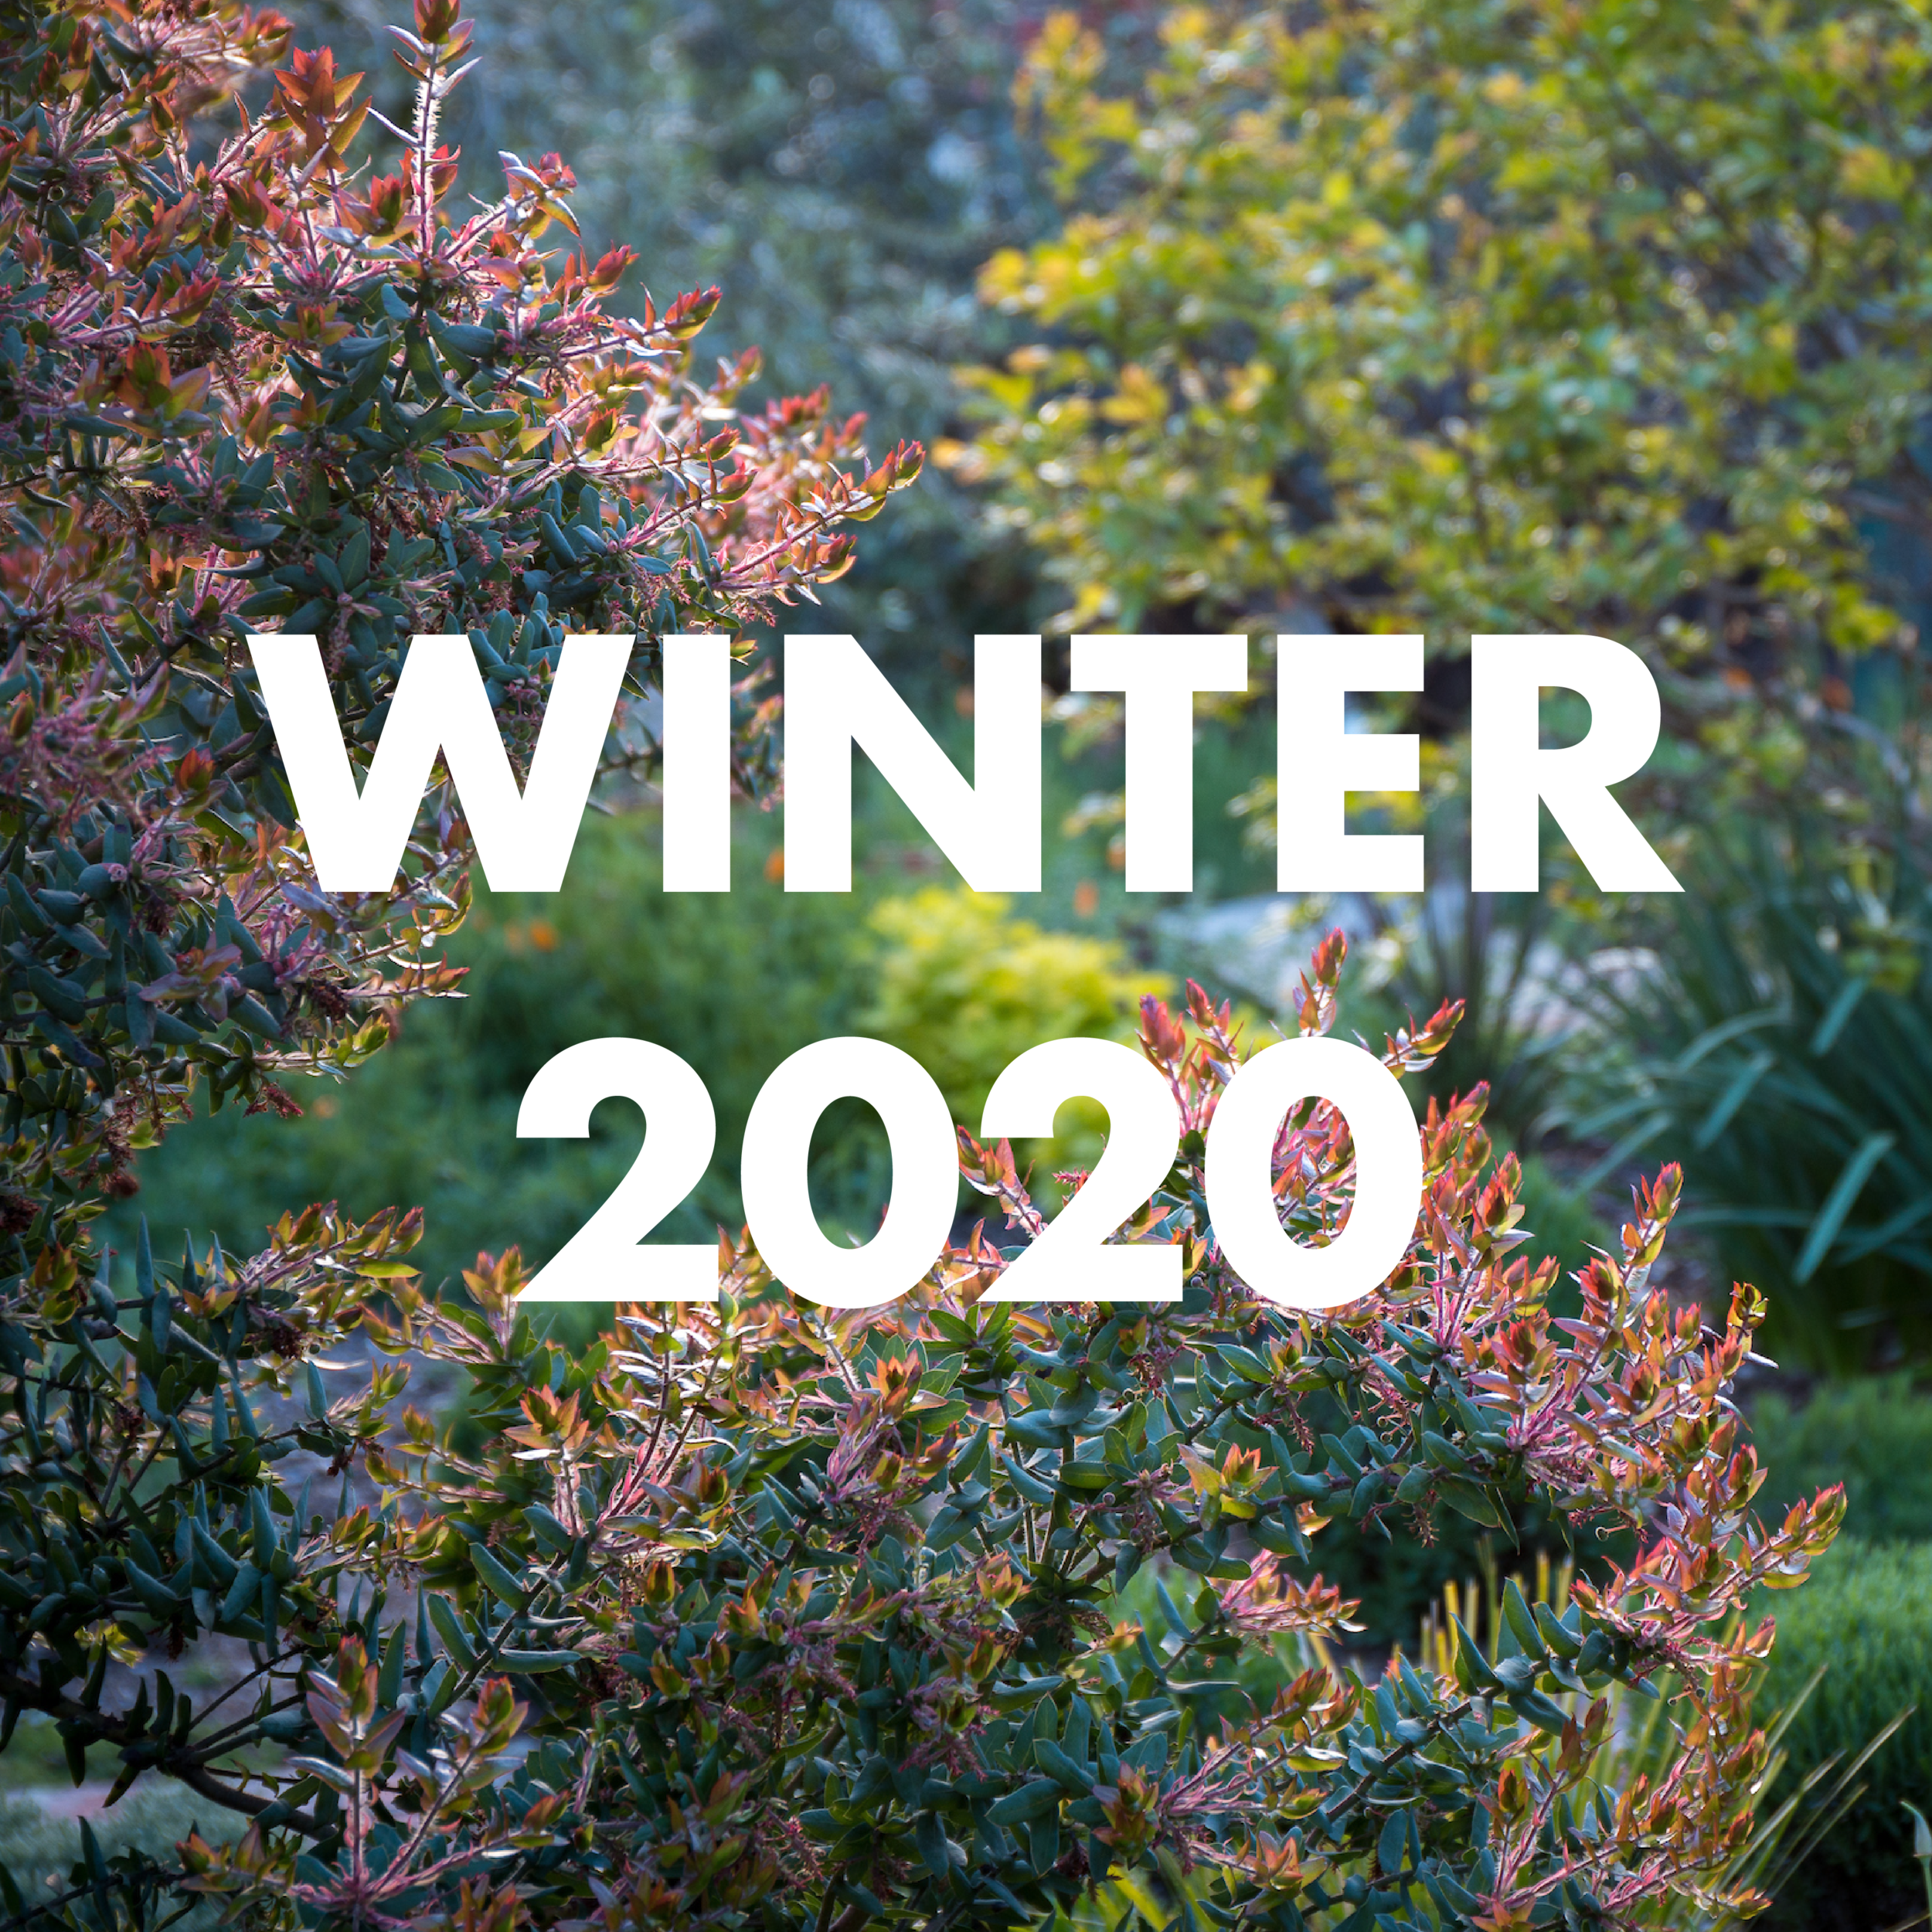 winer 2020 thumbnail-01.png